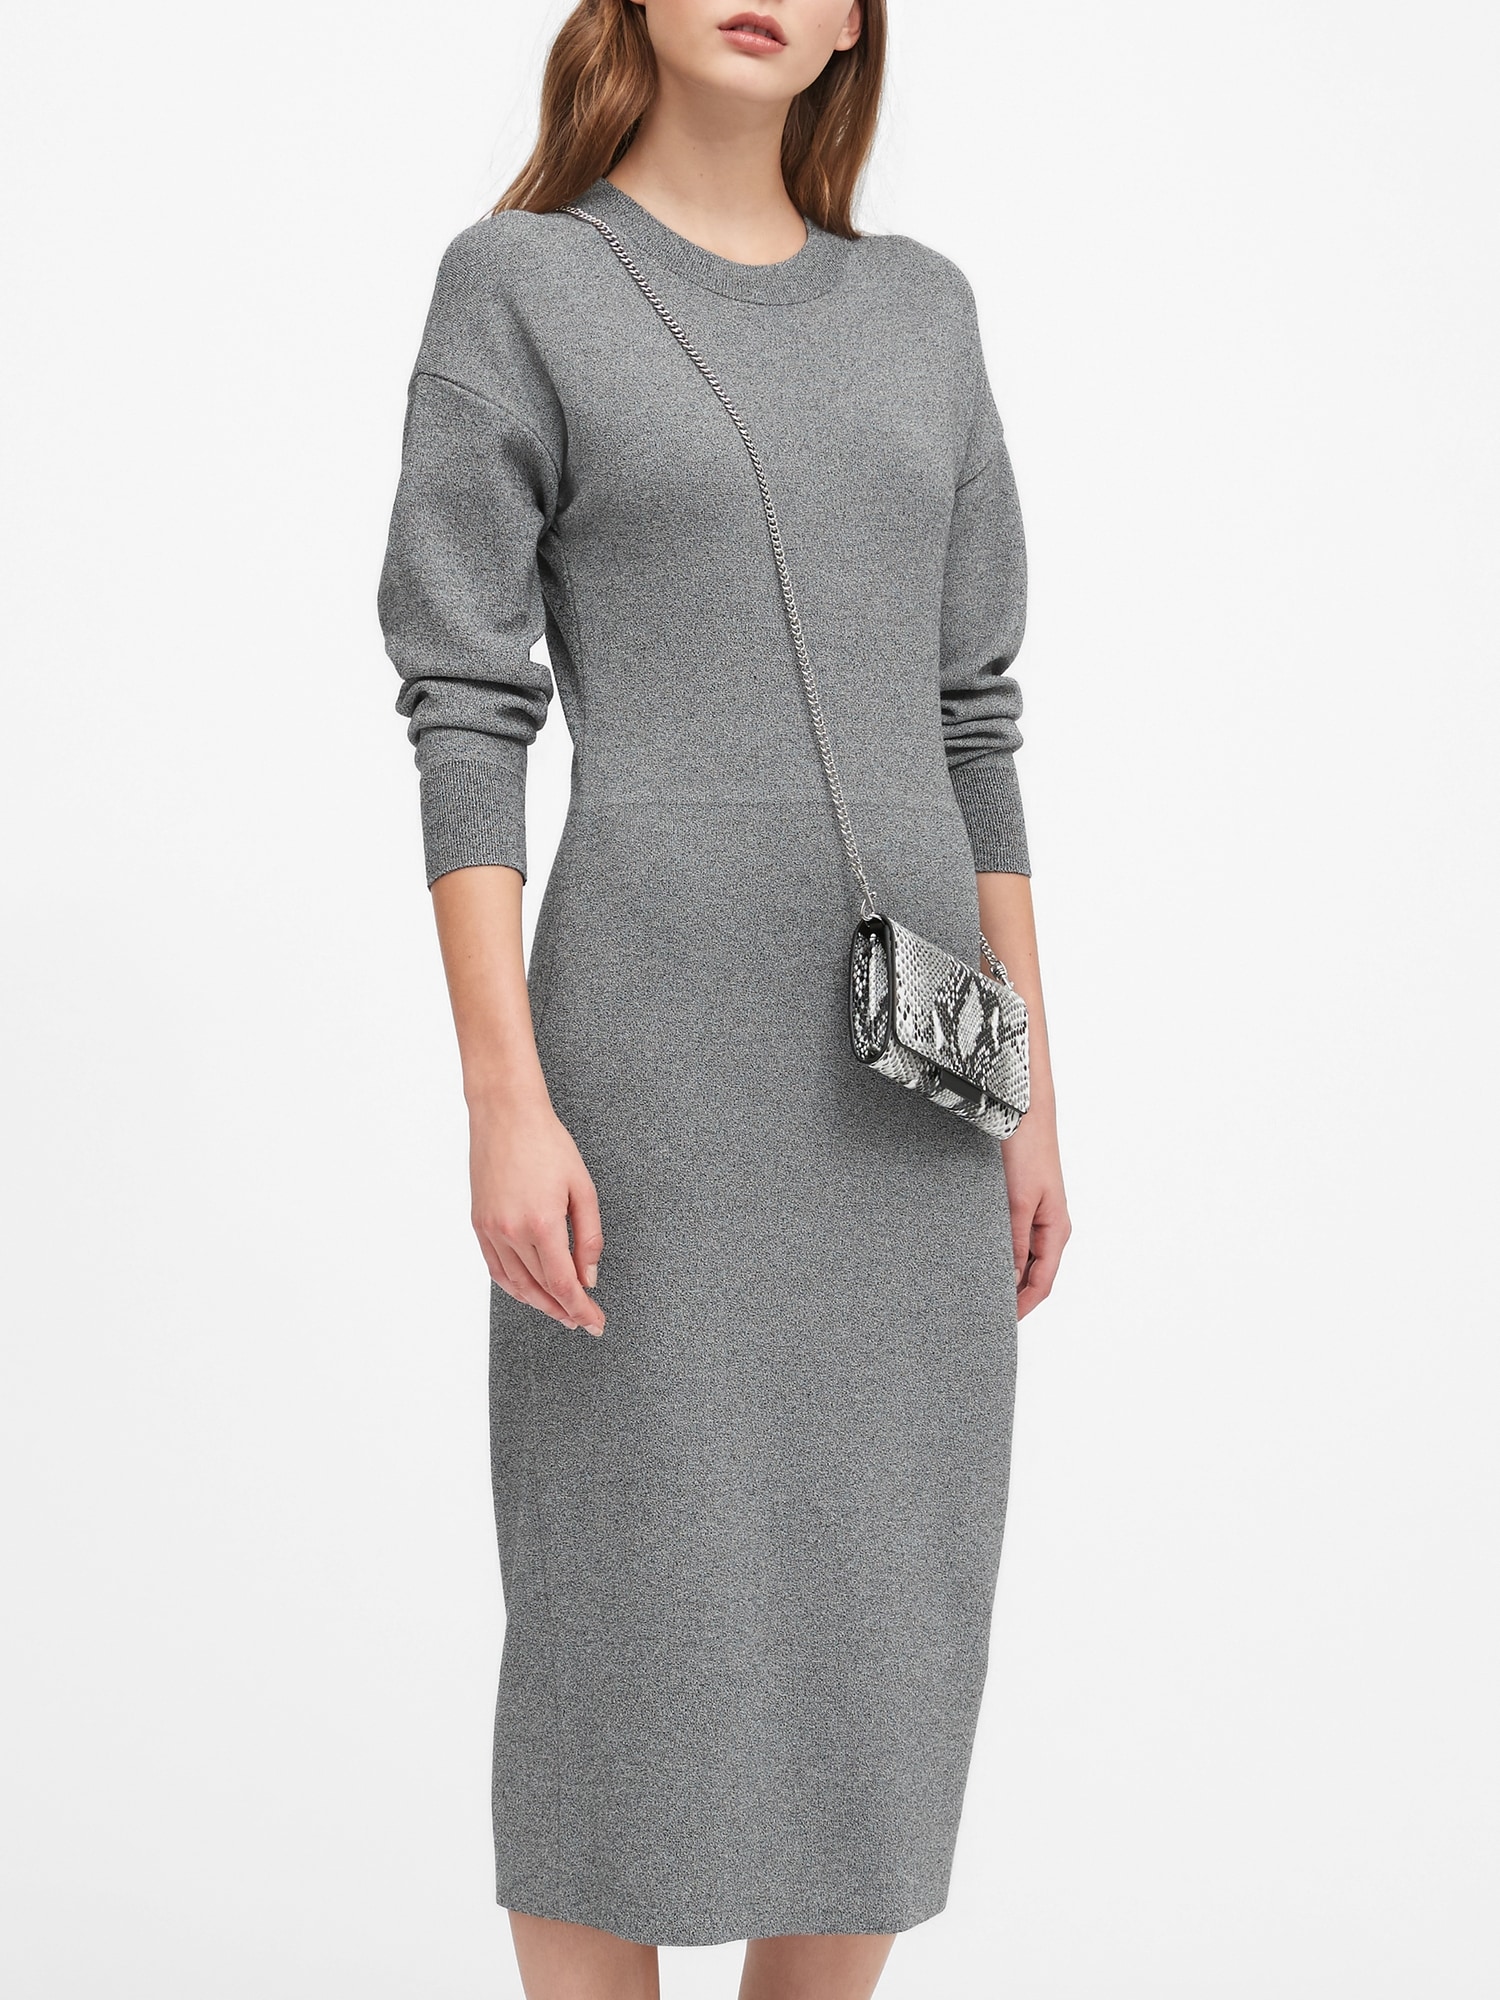 Dolman-Sleeve Sweater Dress